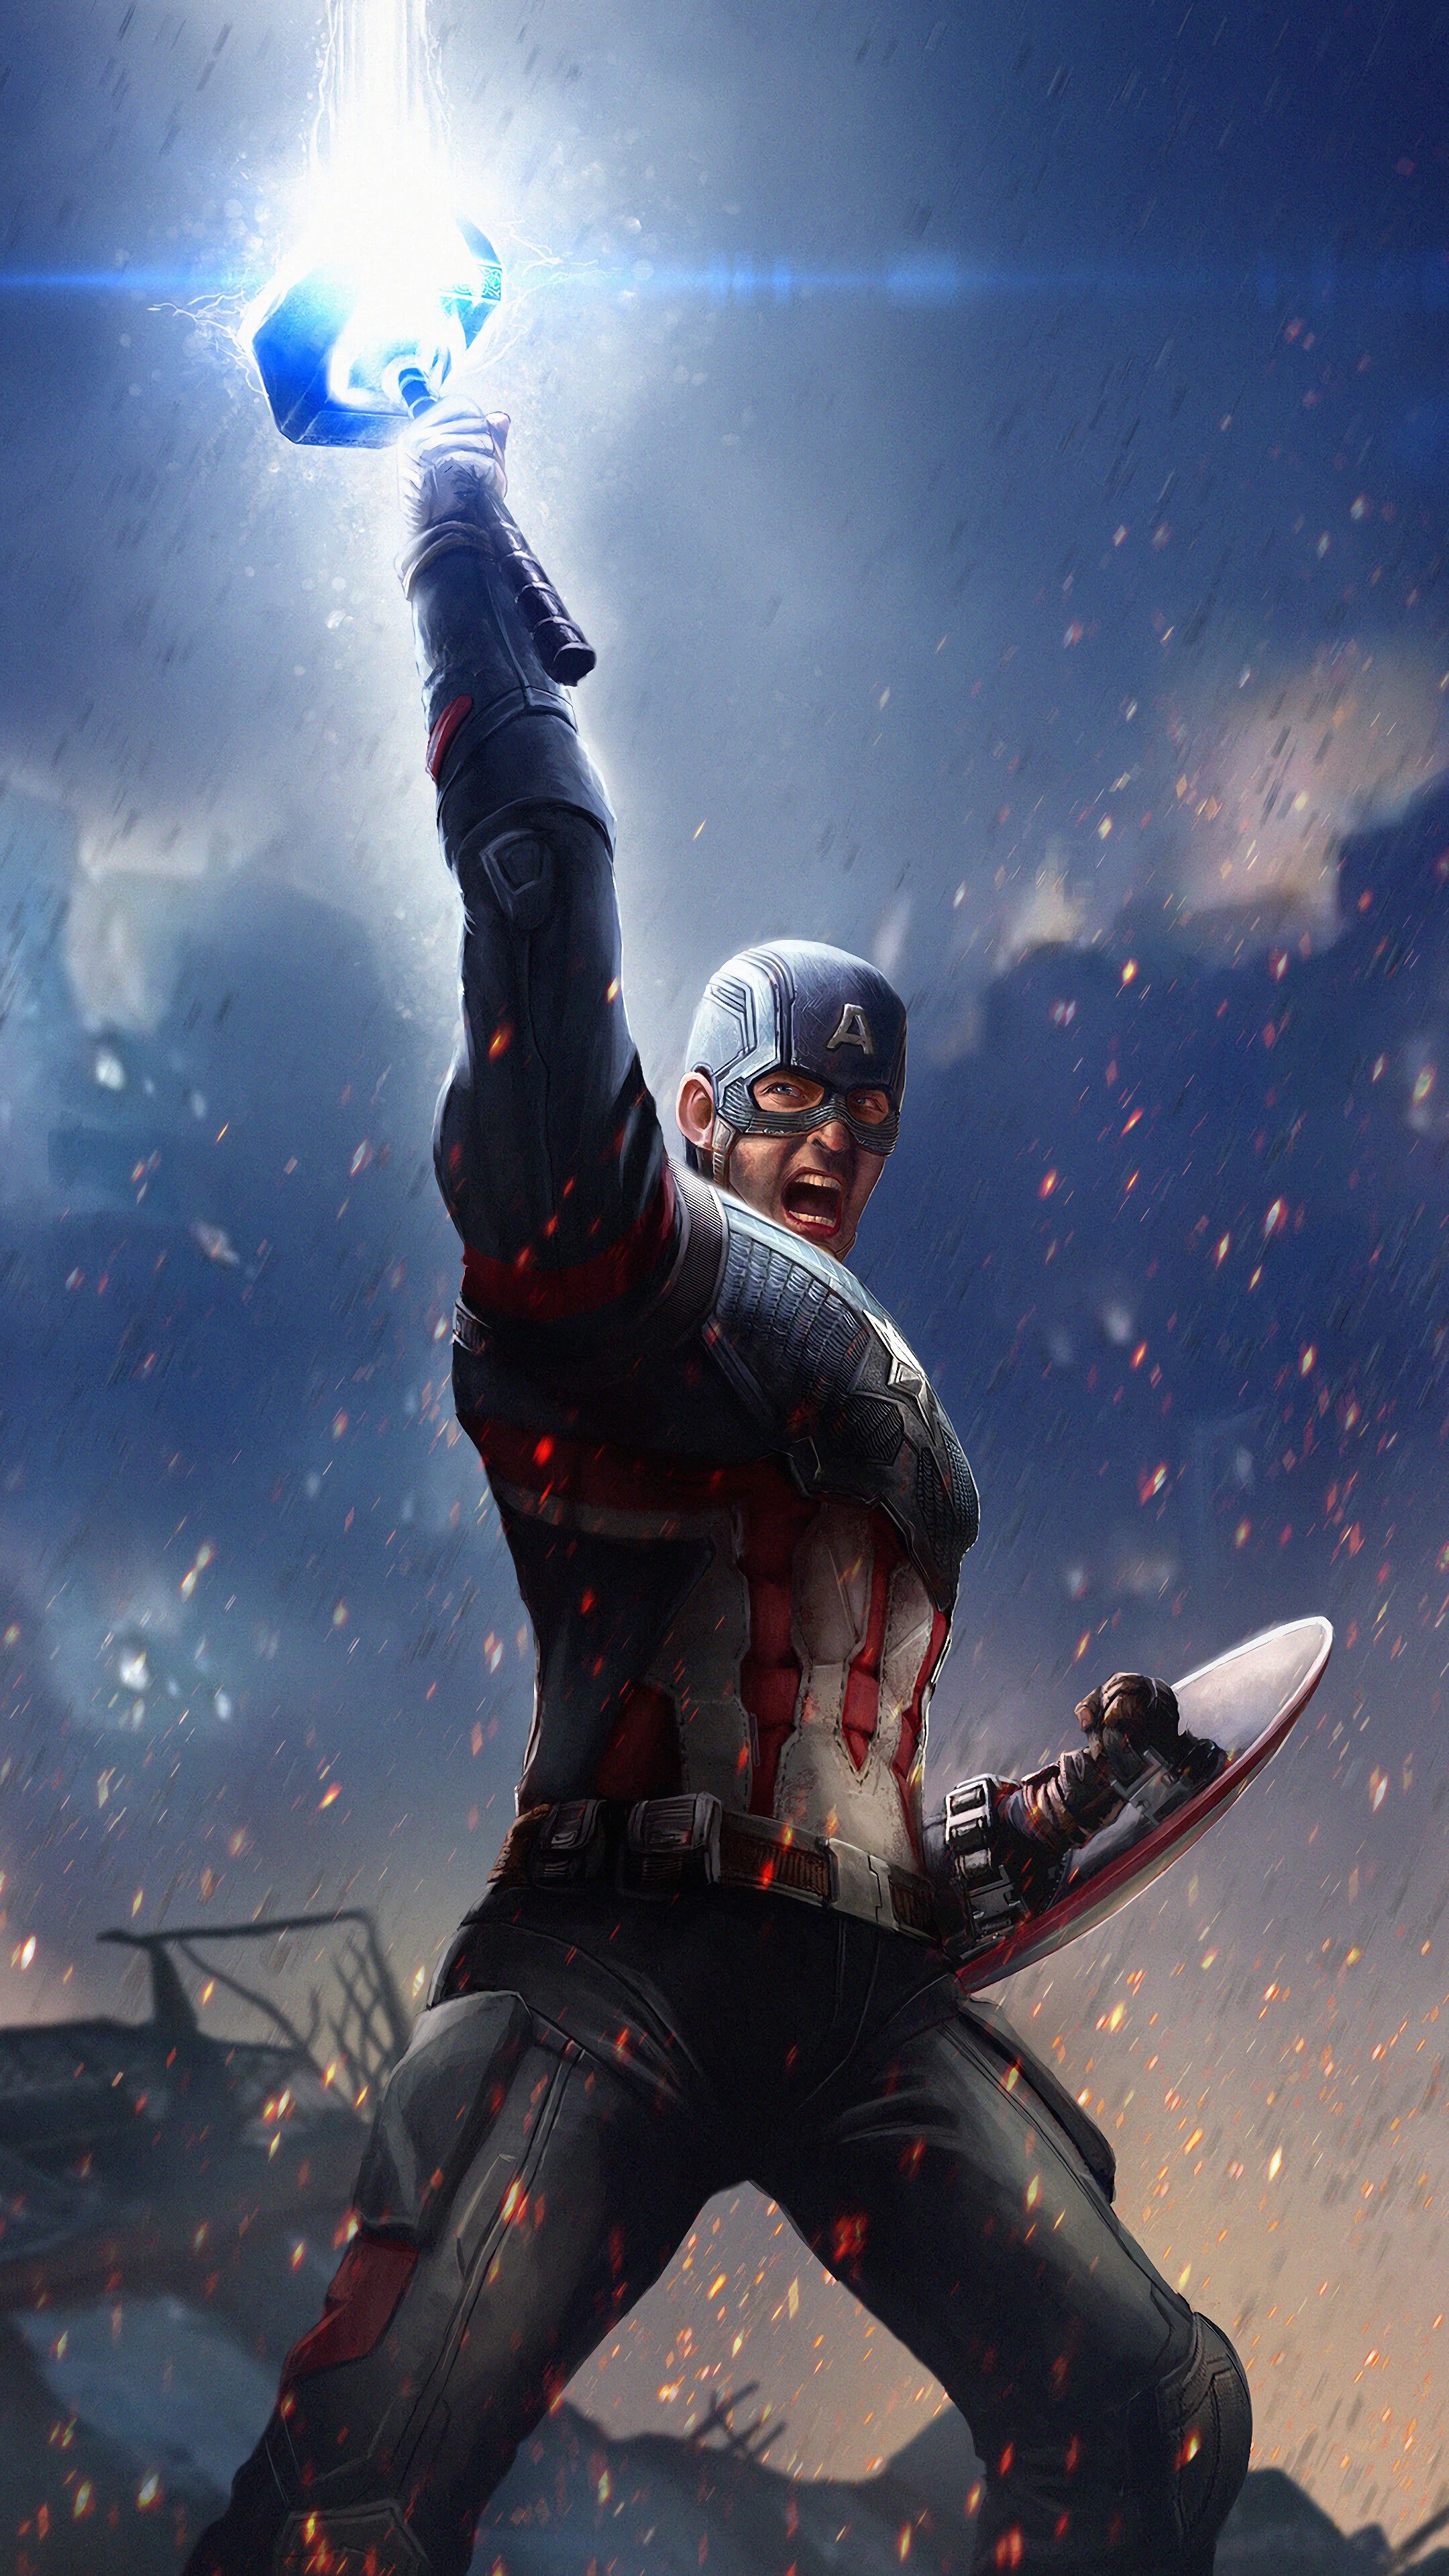 Captain America, Mjolnir, Hammer, Lightning, Avengers Endgame, 4K phone HD Wallpaper, Image, Background, Photo and Picture